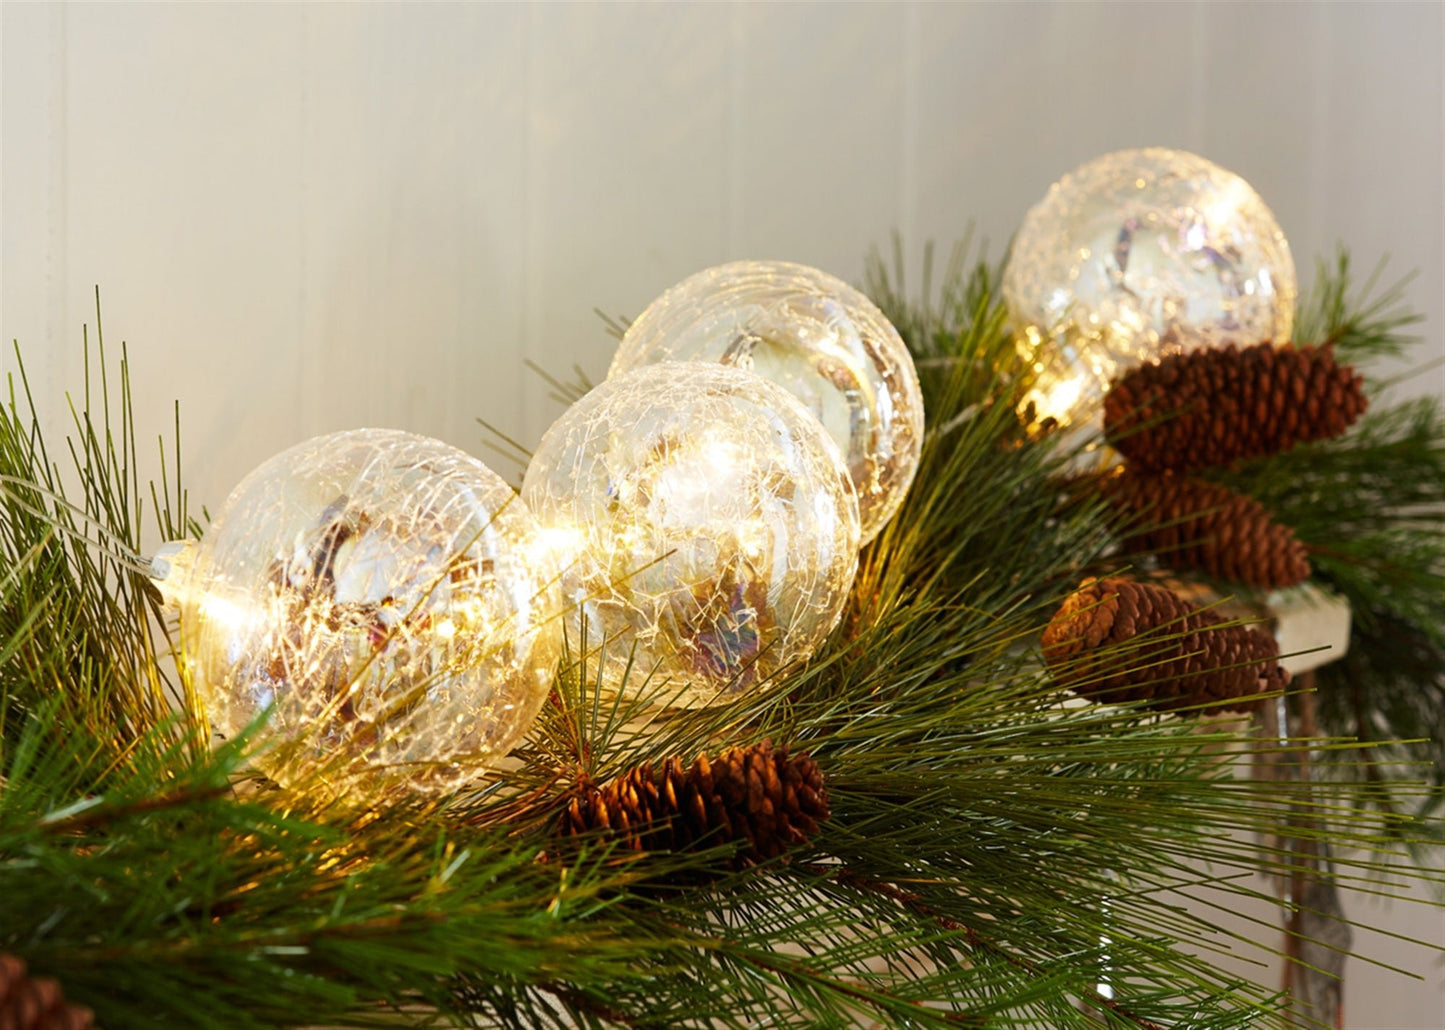 LED Lighted Ball Ornament Strand (Set of 2)